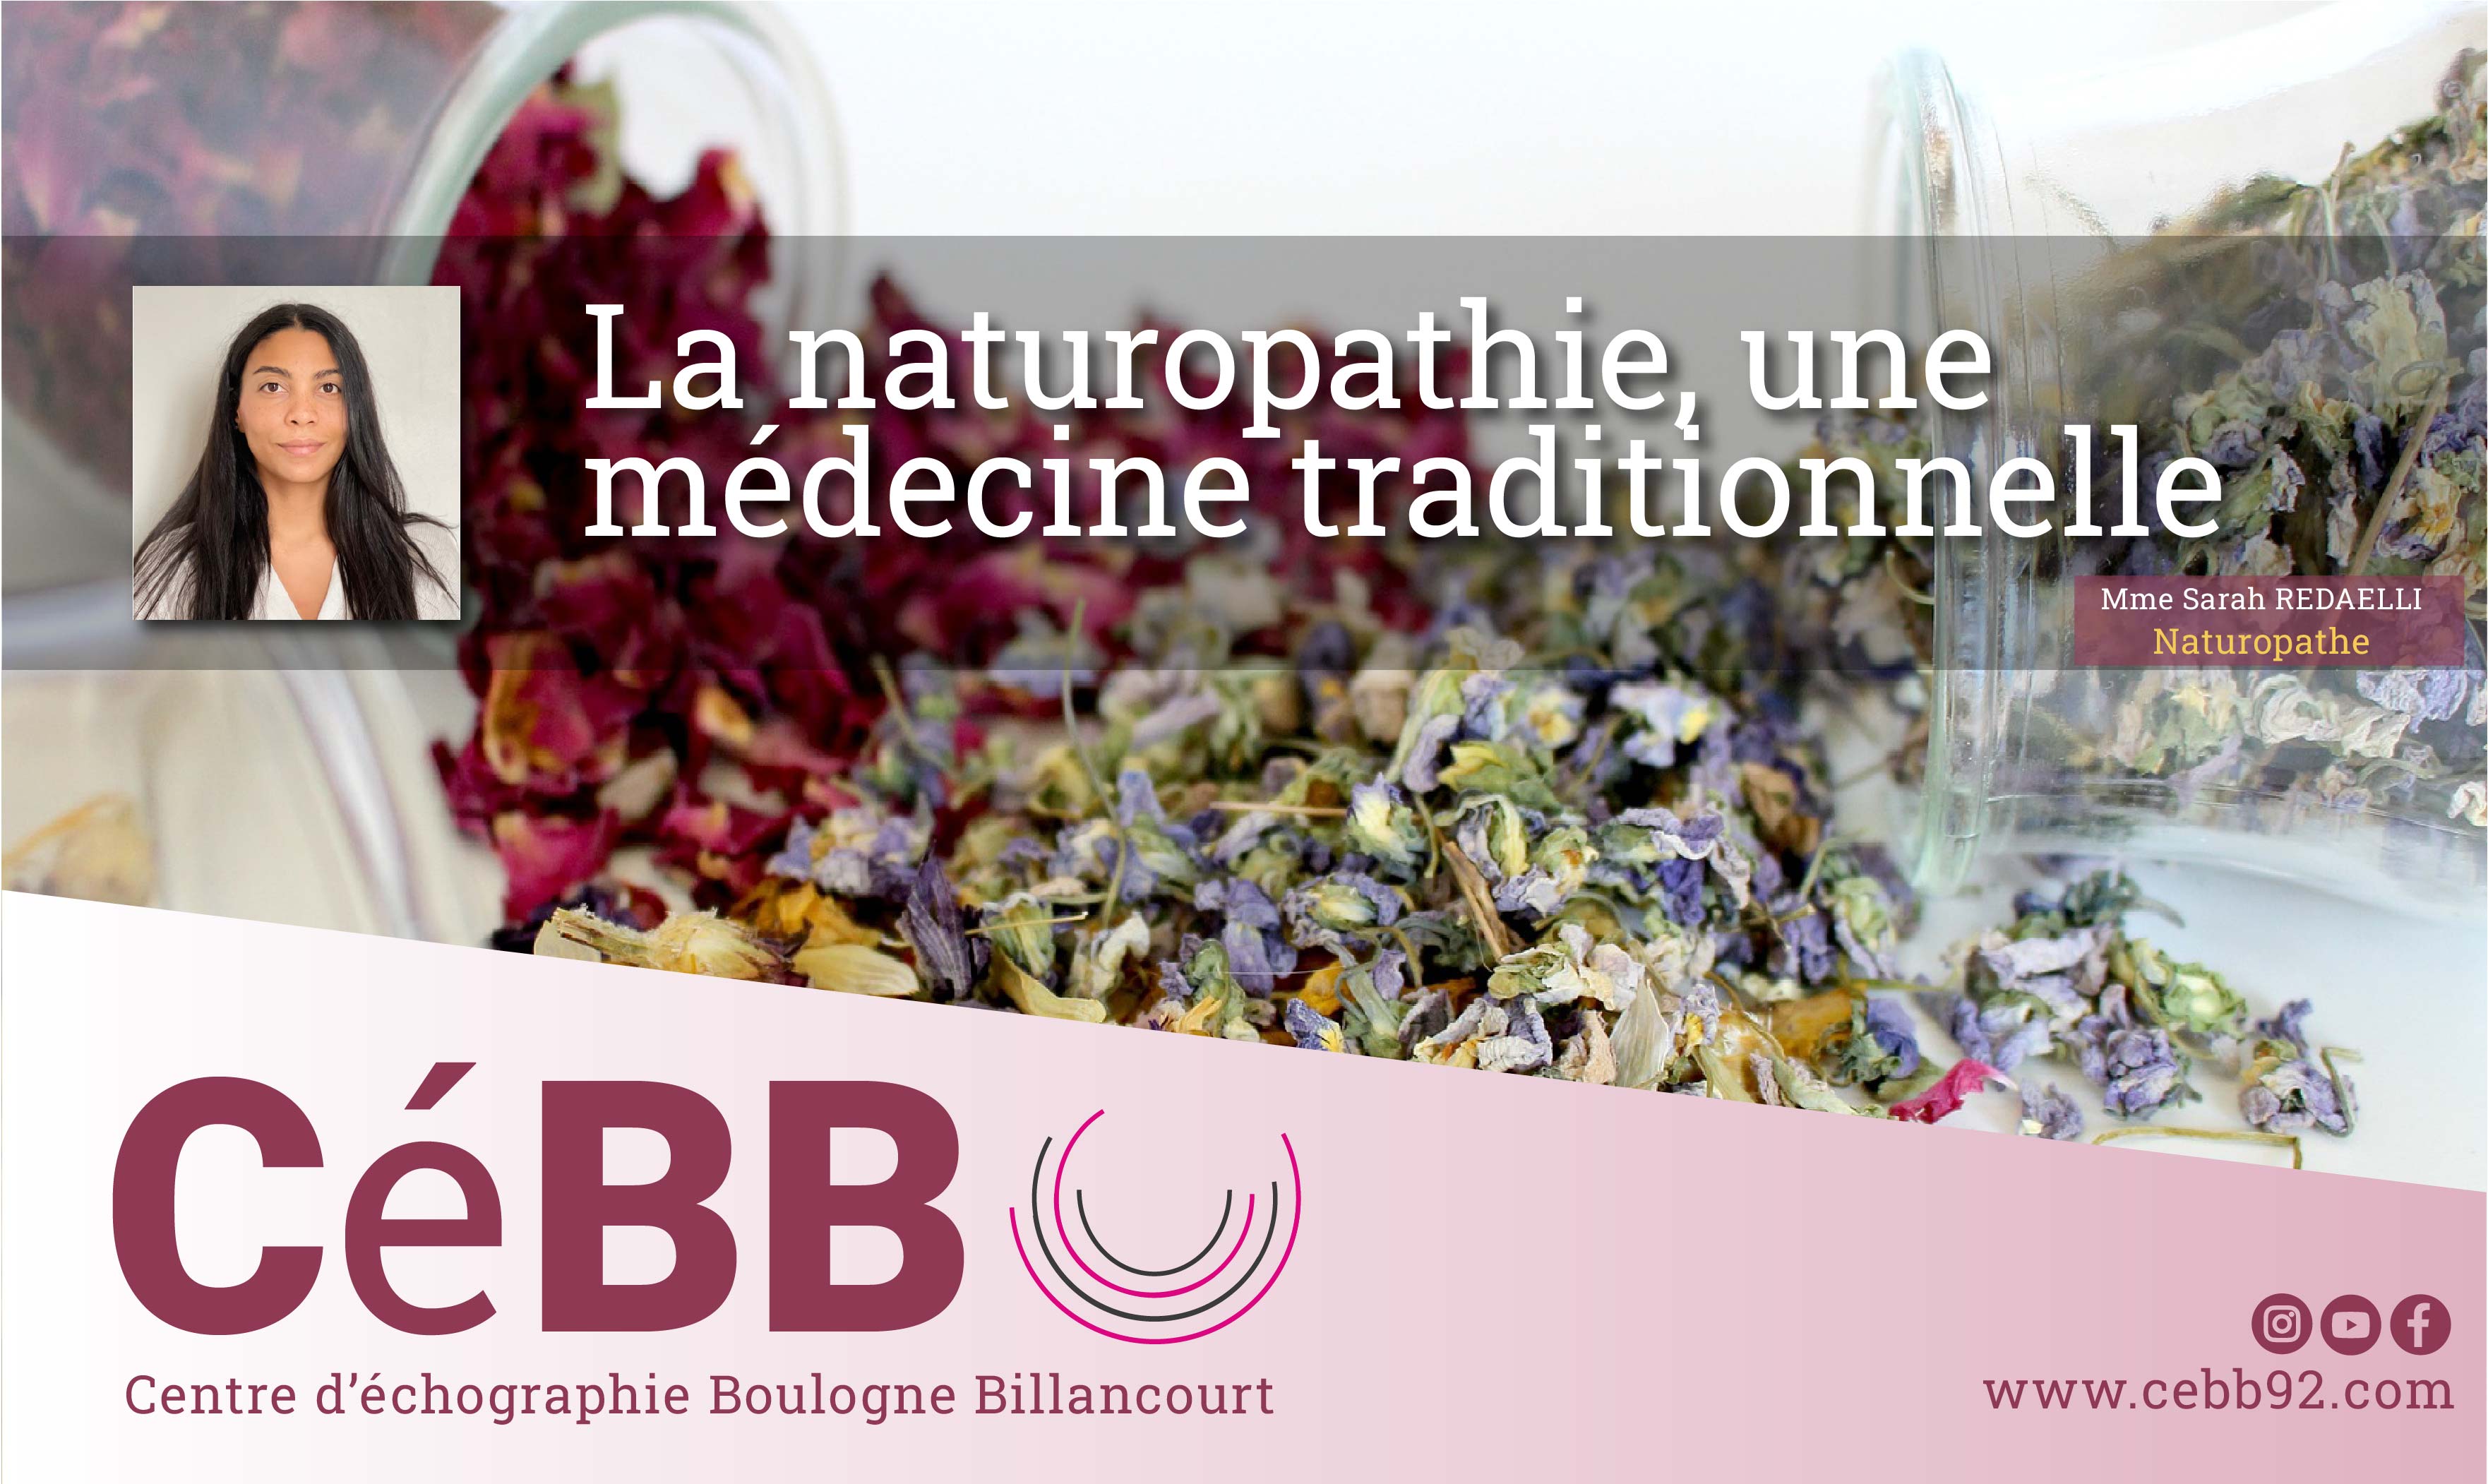 La naturopathie, une médecine traditionnelle inspirée de la nature